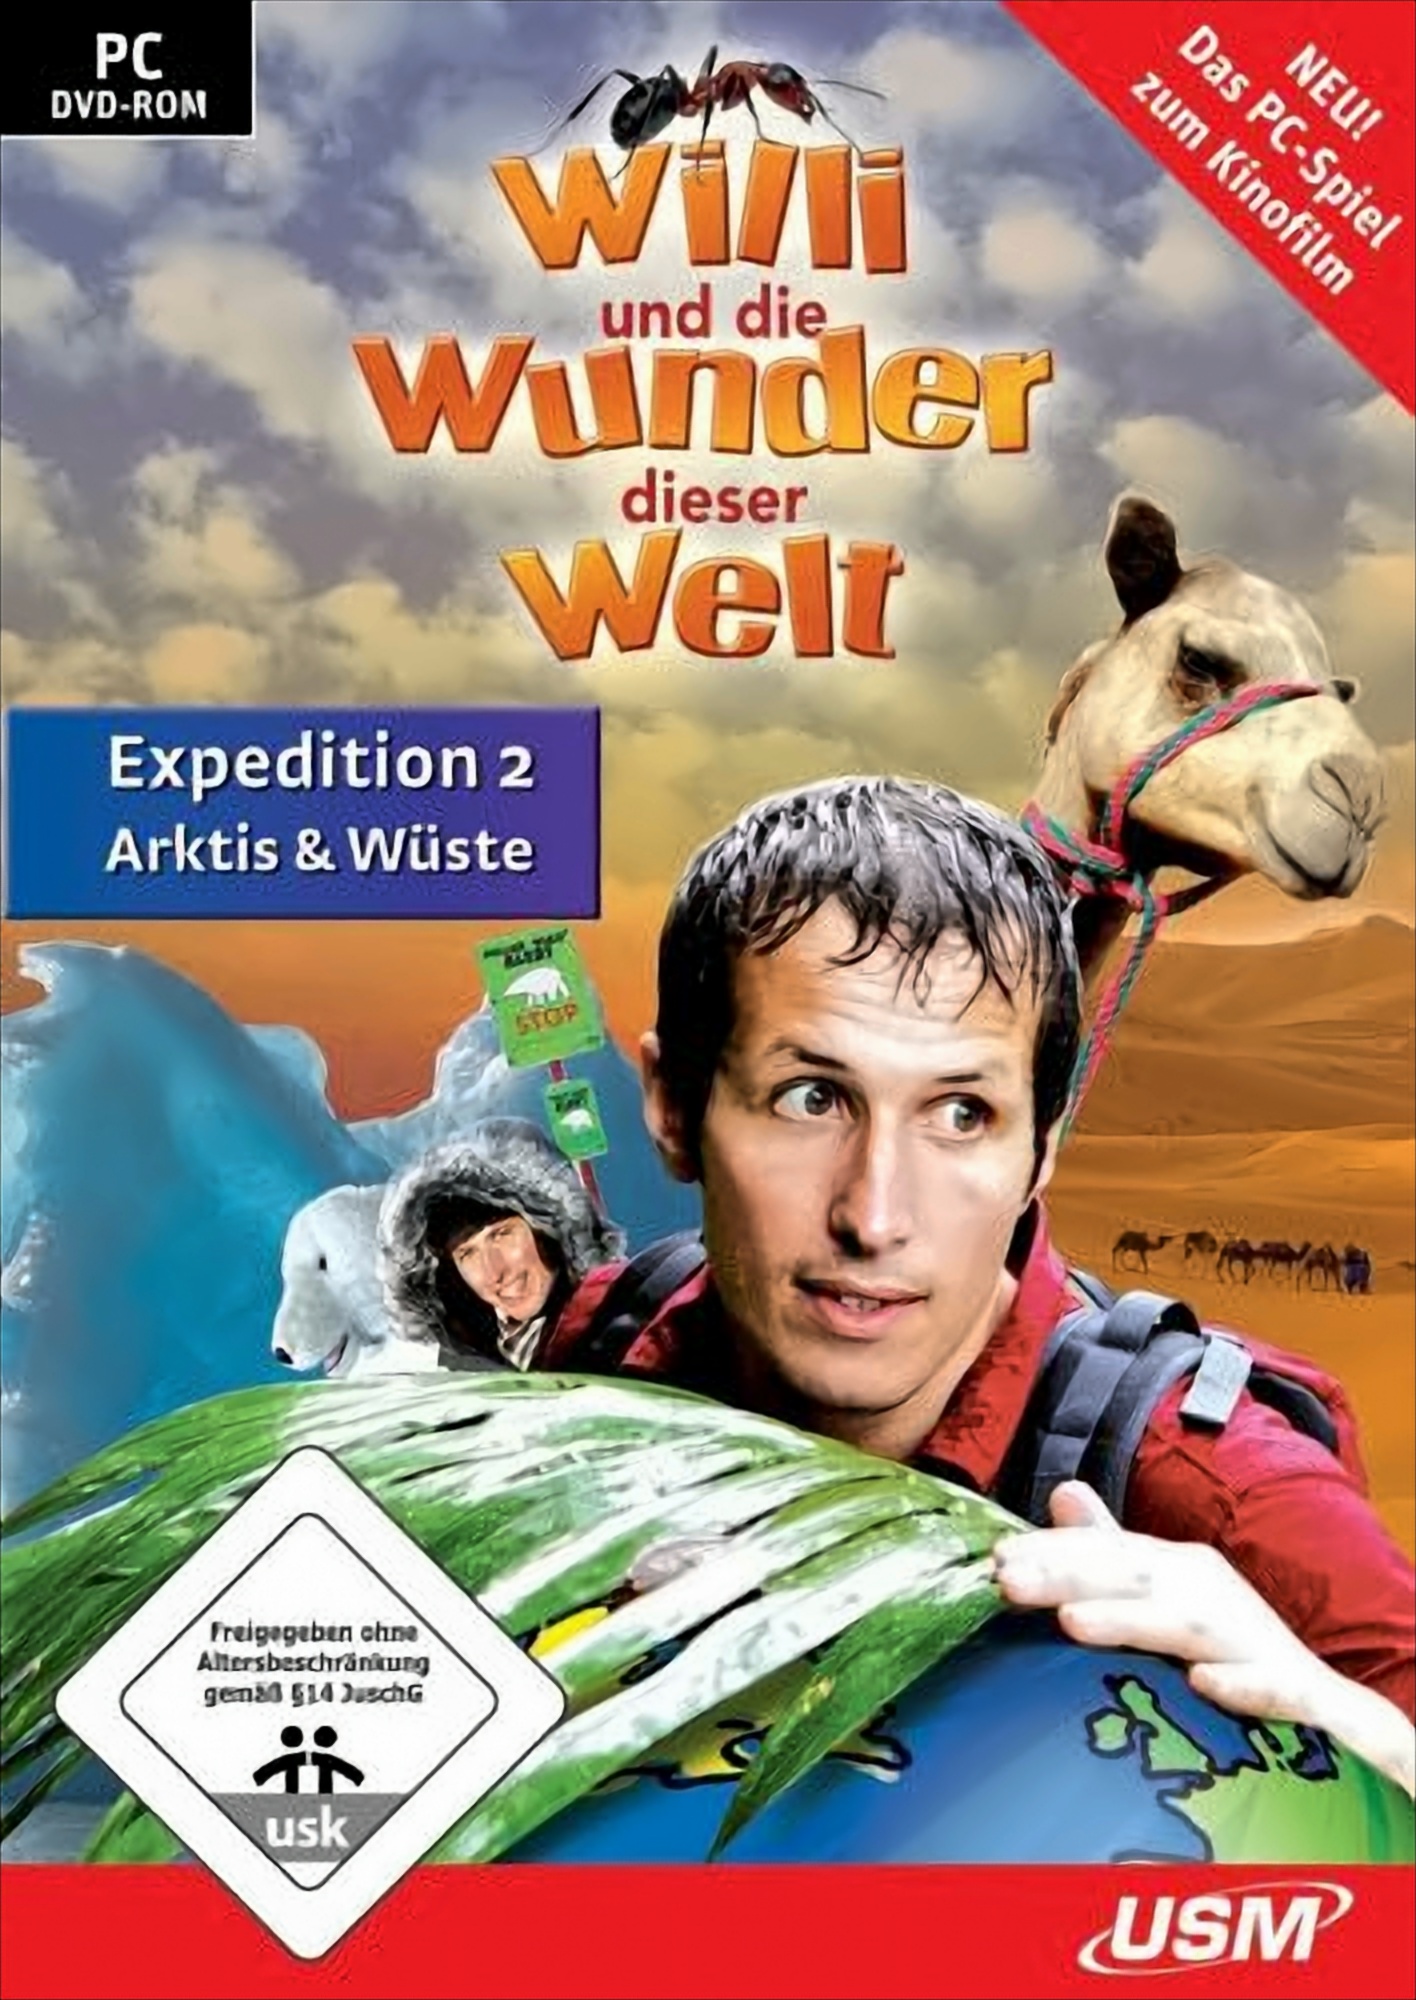 Willi und die Wunder dieser Welt - Expedition 2 - Arktis & Wüste von USM